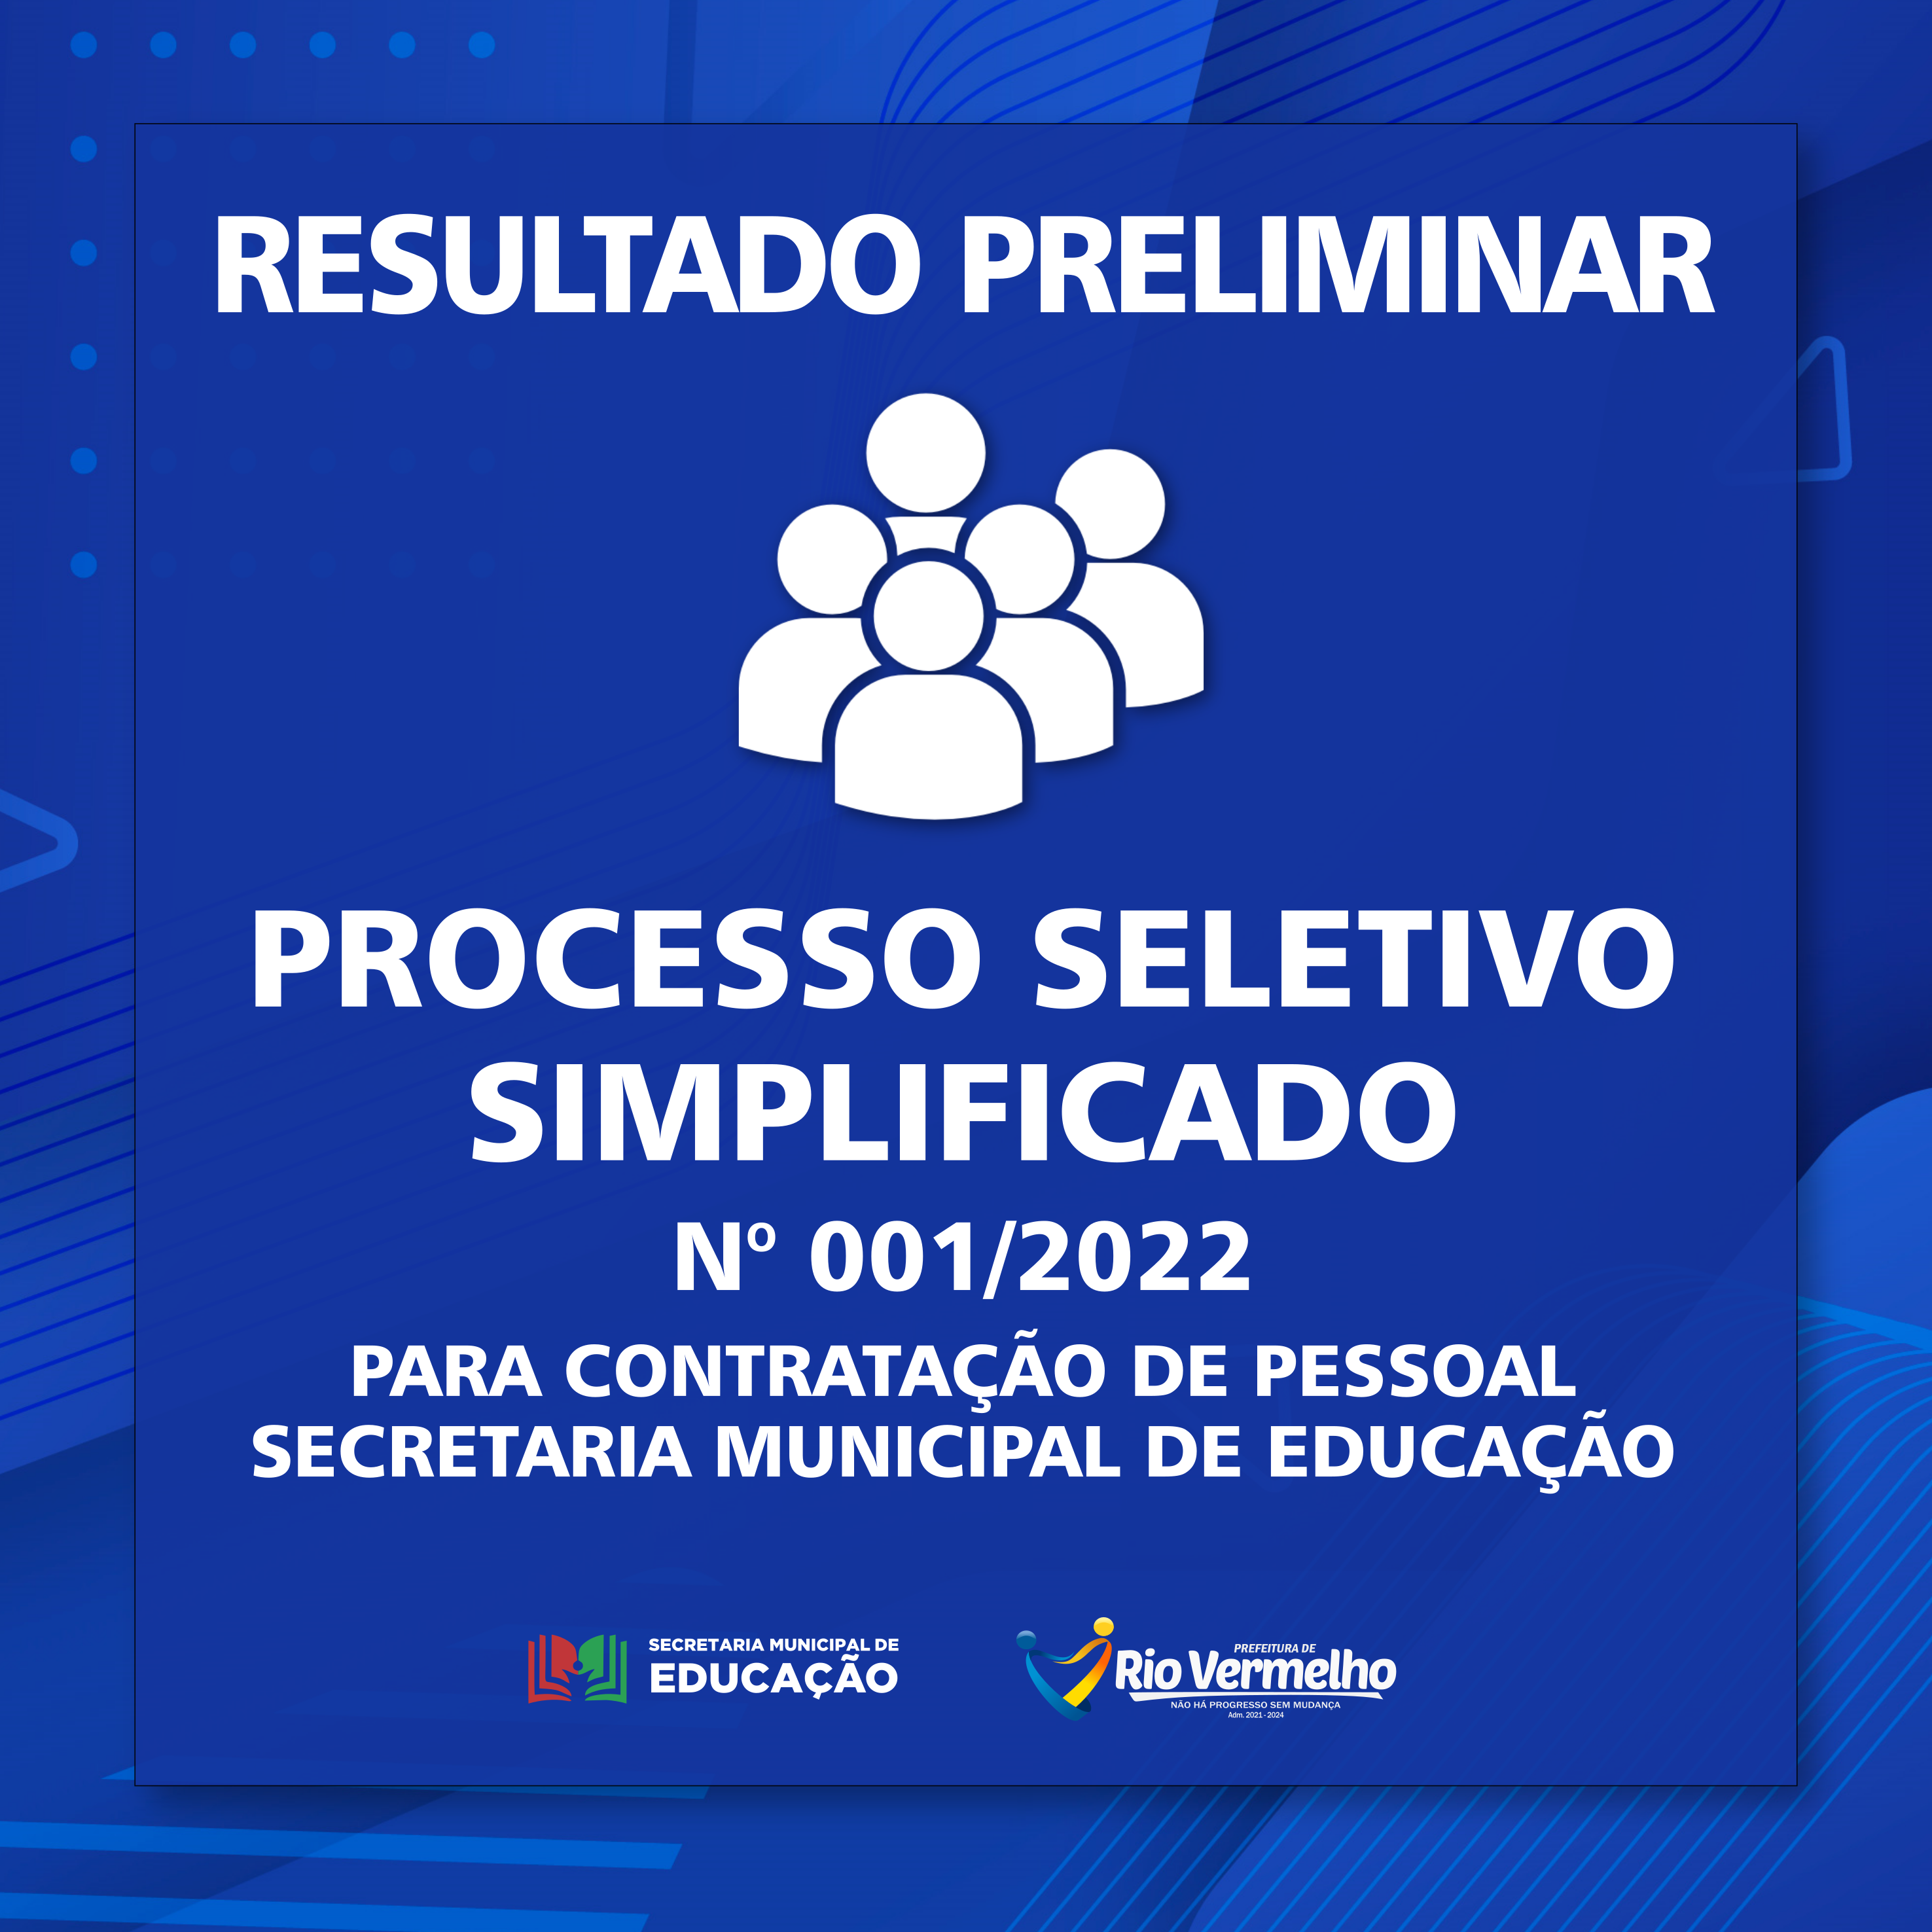 You are currently viewing RESULTADO PRELIMINAR DO PROCESSO SELETIVO SIMPLIFICADO Nº 001/2022 – SEC. MUN. DE EDUCAÇÃO